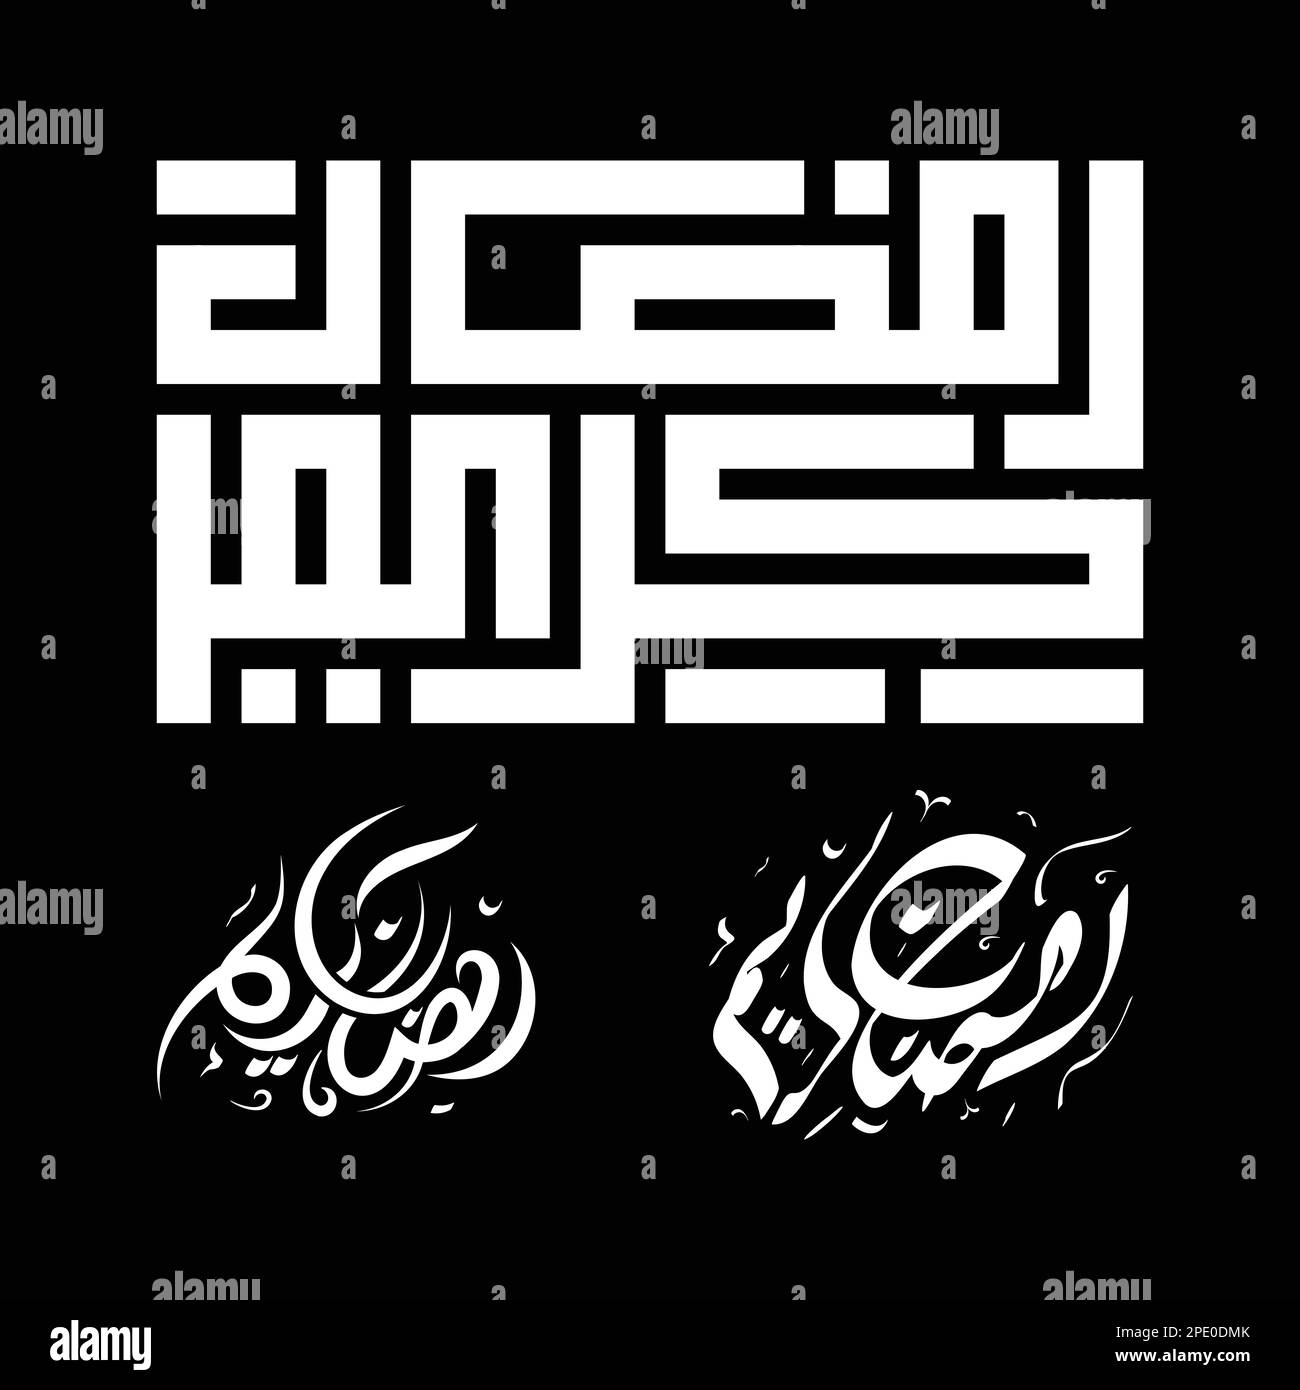 Arabic calligraphy design element vector illustration ramadam kareem or ramadan mubarak design Stock Vector